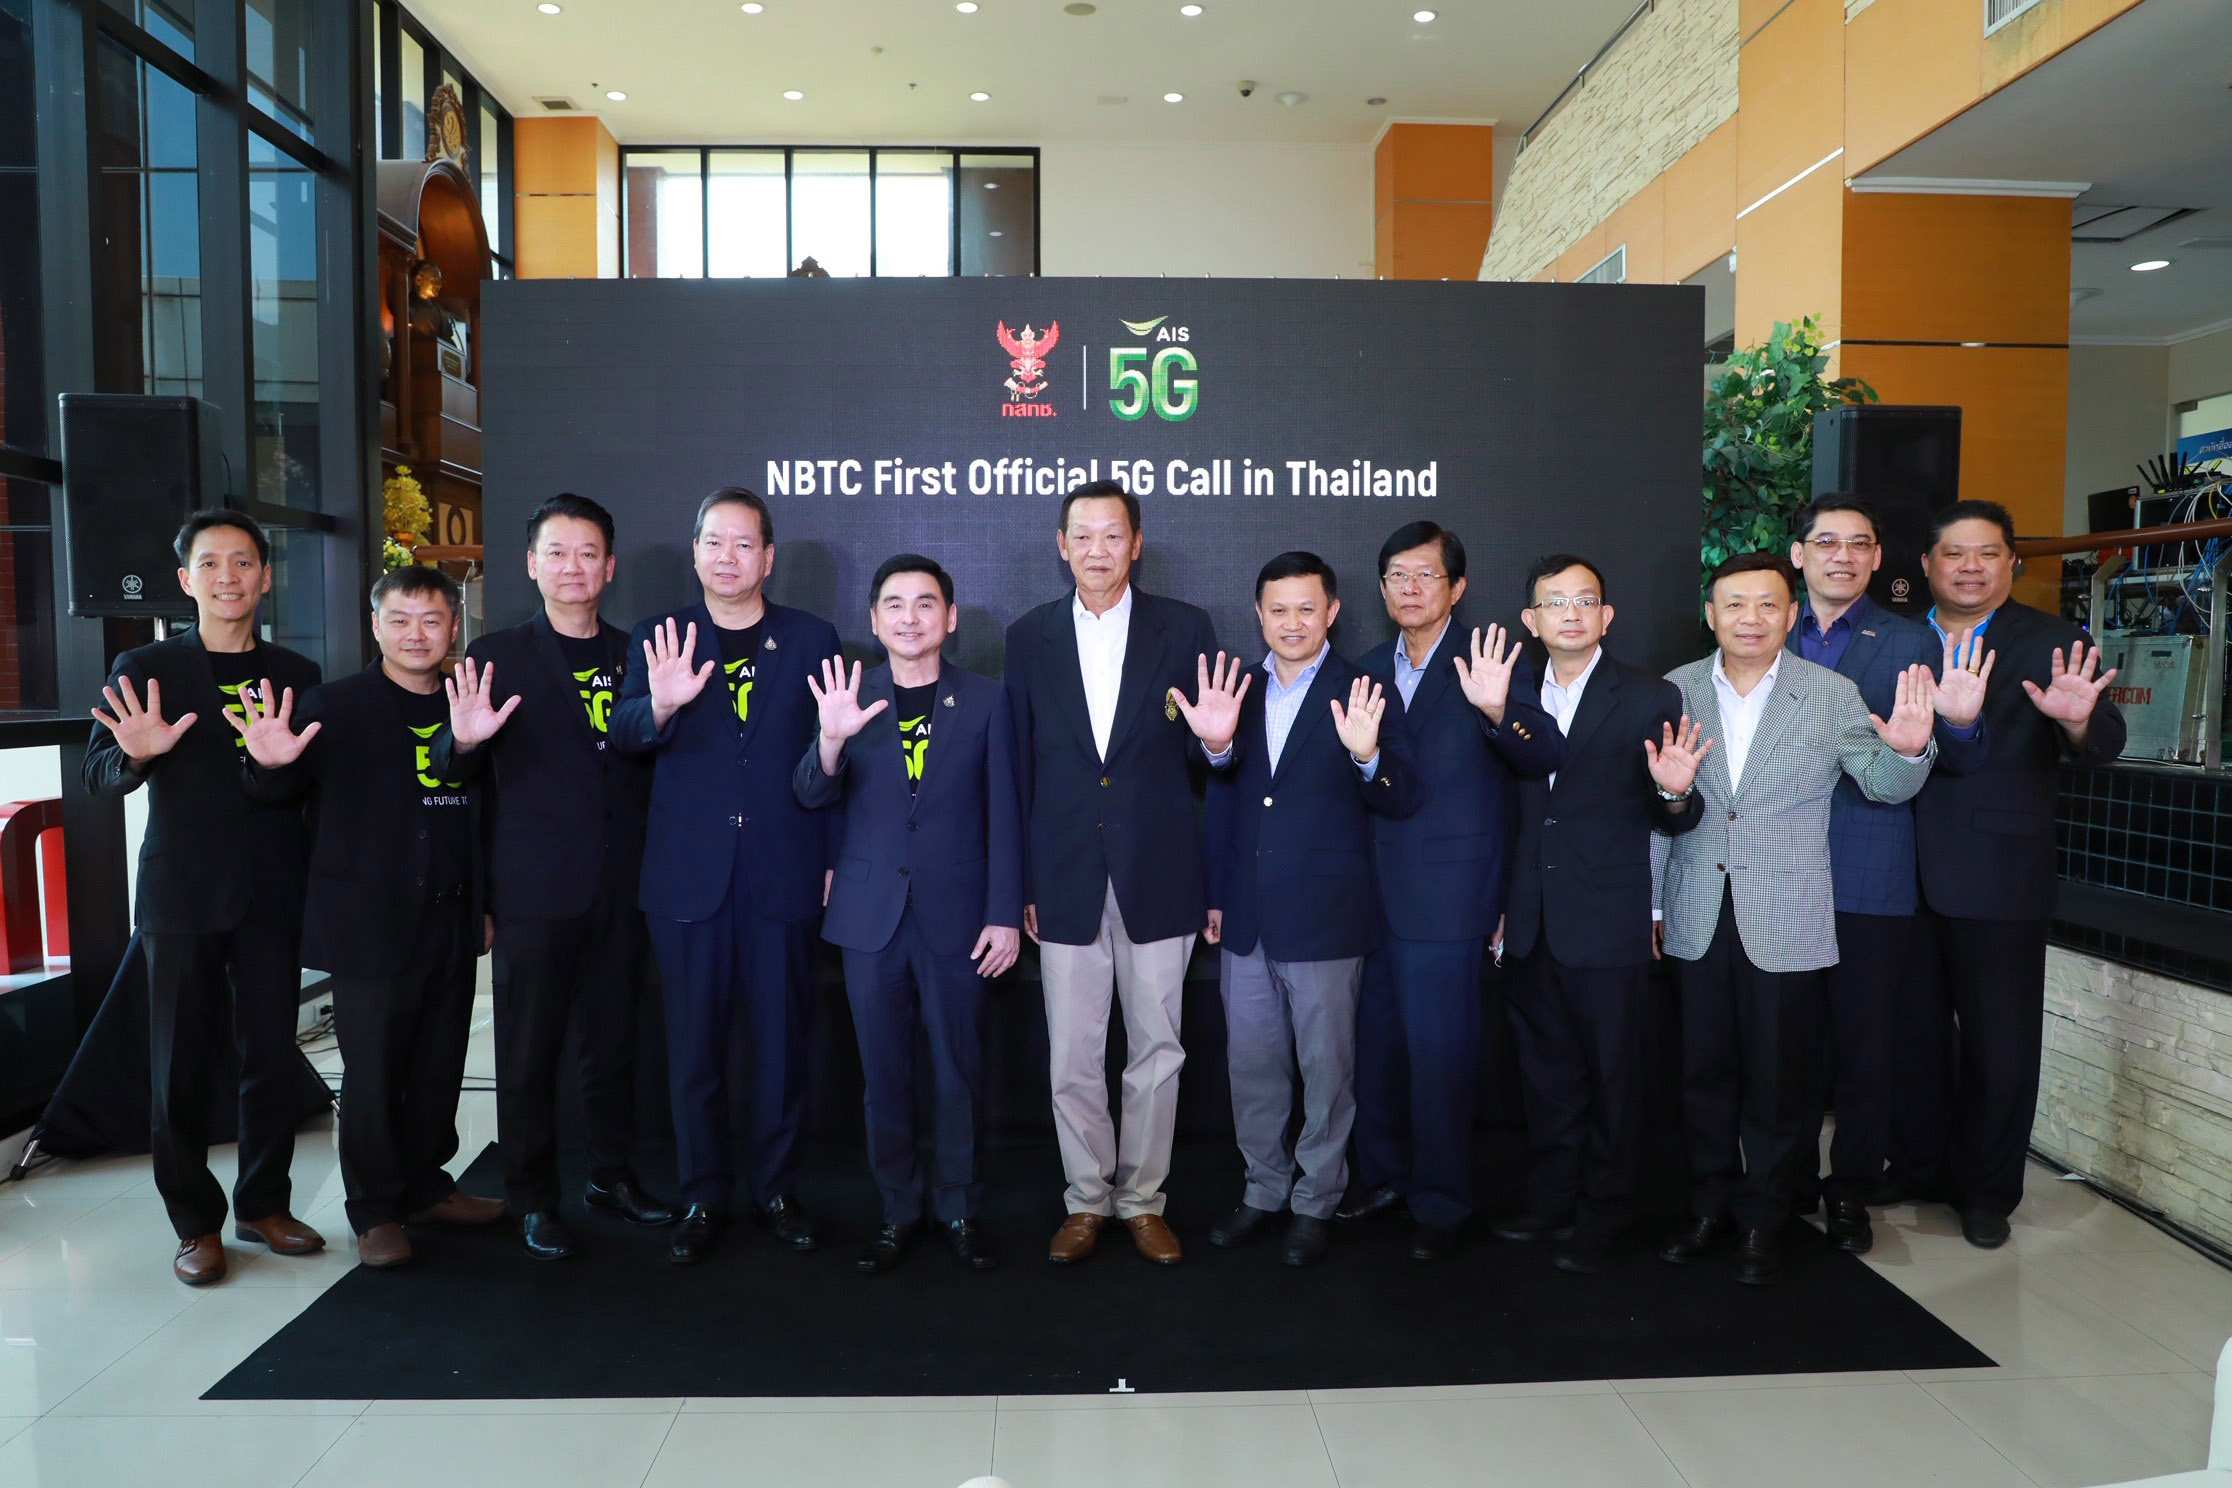 AIS เปิดเครือข่าย 5G ทั่วประเทศ เป็นรายแรกของไทยเปิดประวัติศาสตร์หน้าใหม่ให้ประเทศ